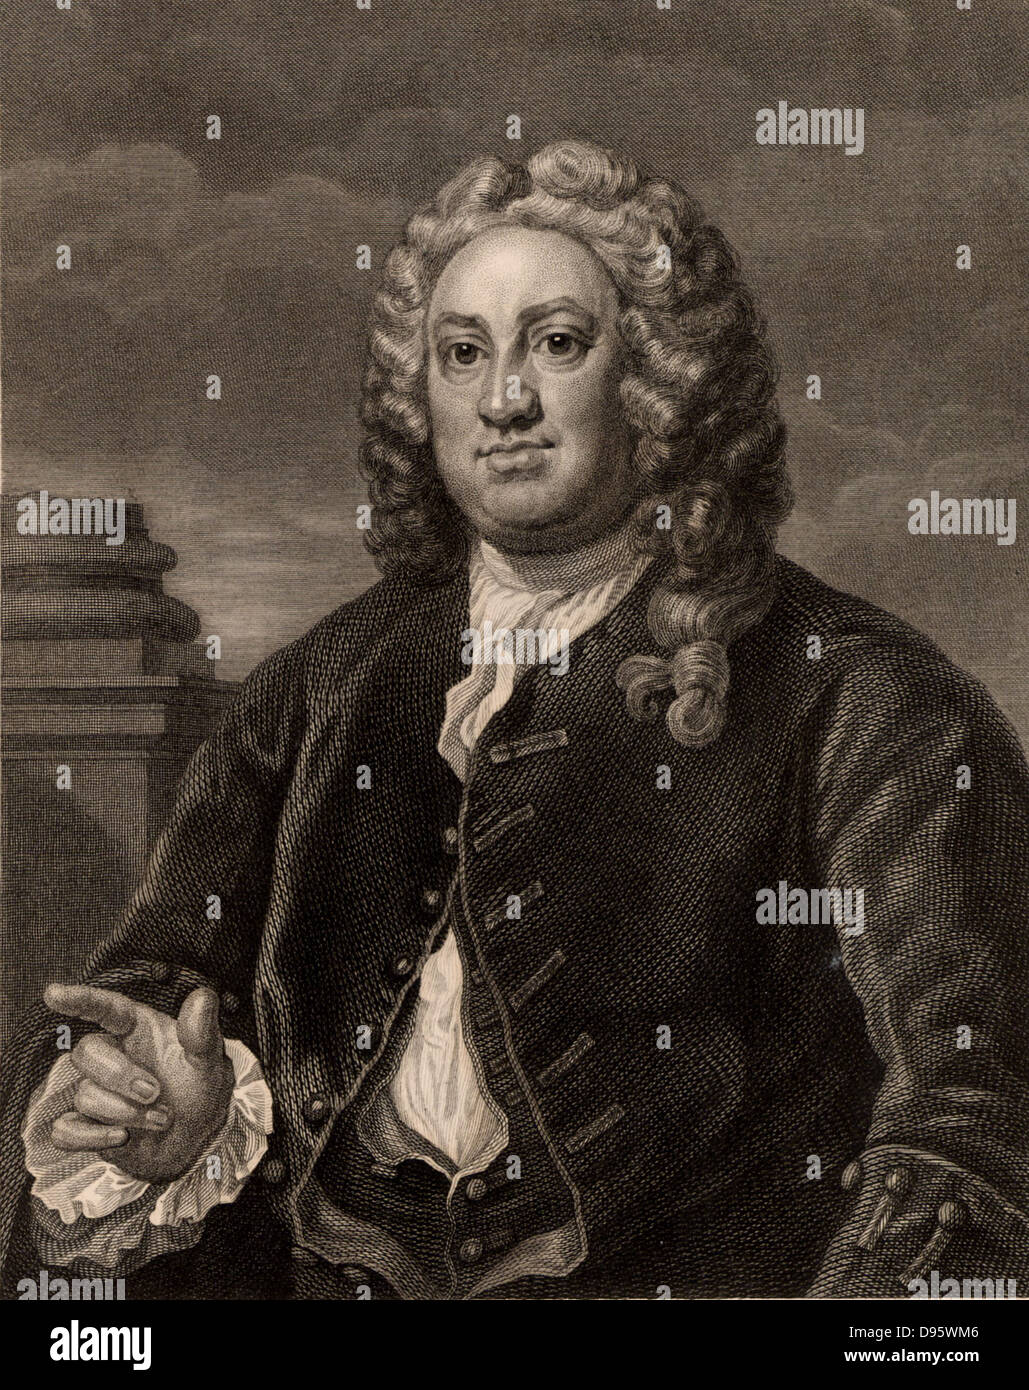 Martin Folkes (1690-1754) Englischer Antiquar, in London geboren. Präsident der Royal Society (1741-1753). Präsident der Gesellschaft der Antiquaries (1749-1754). Gravur nach dem Porträt von William Hogarth. Stockfoto